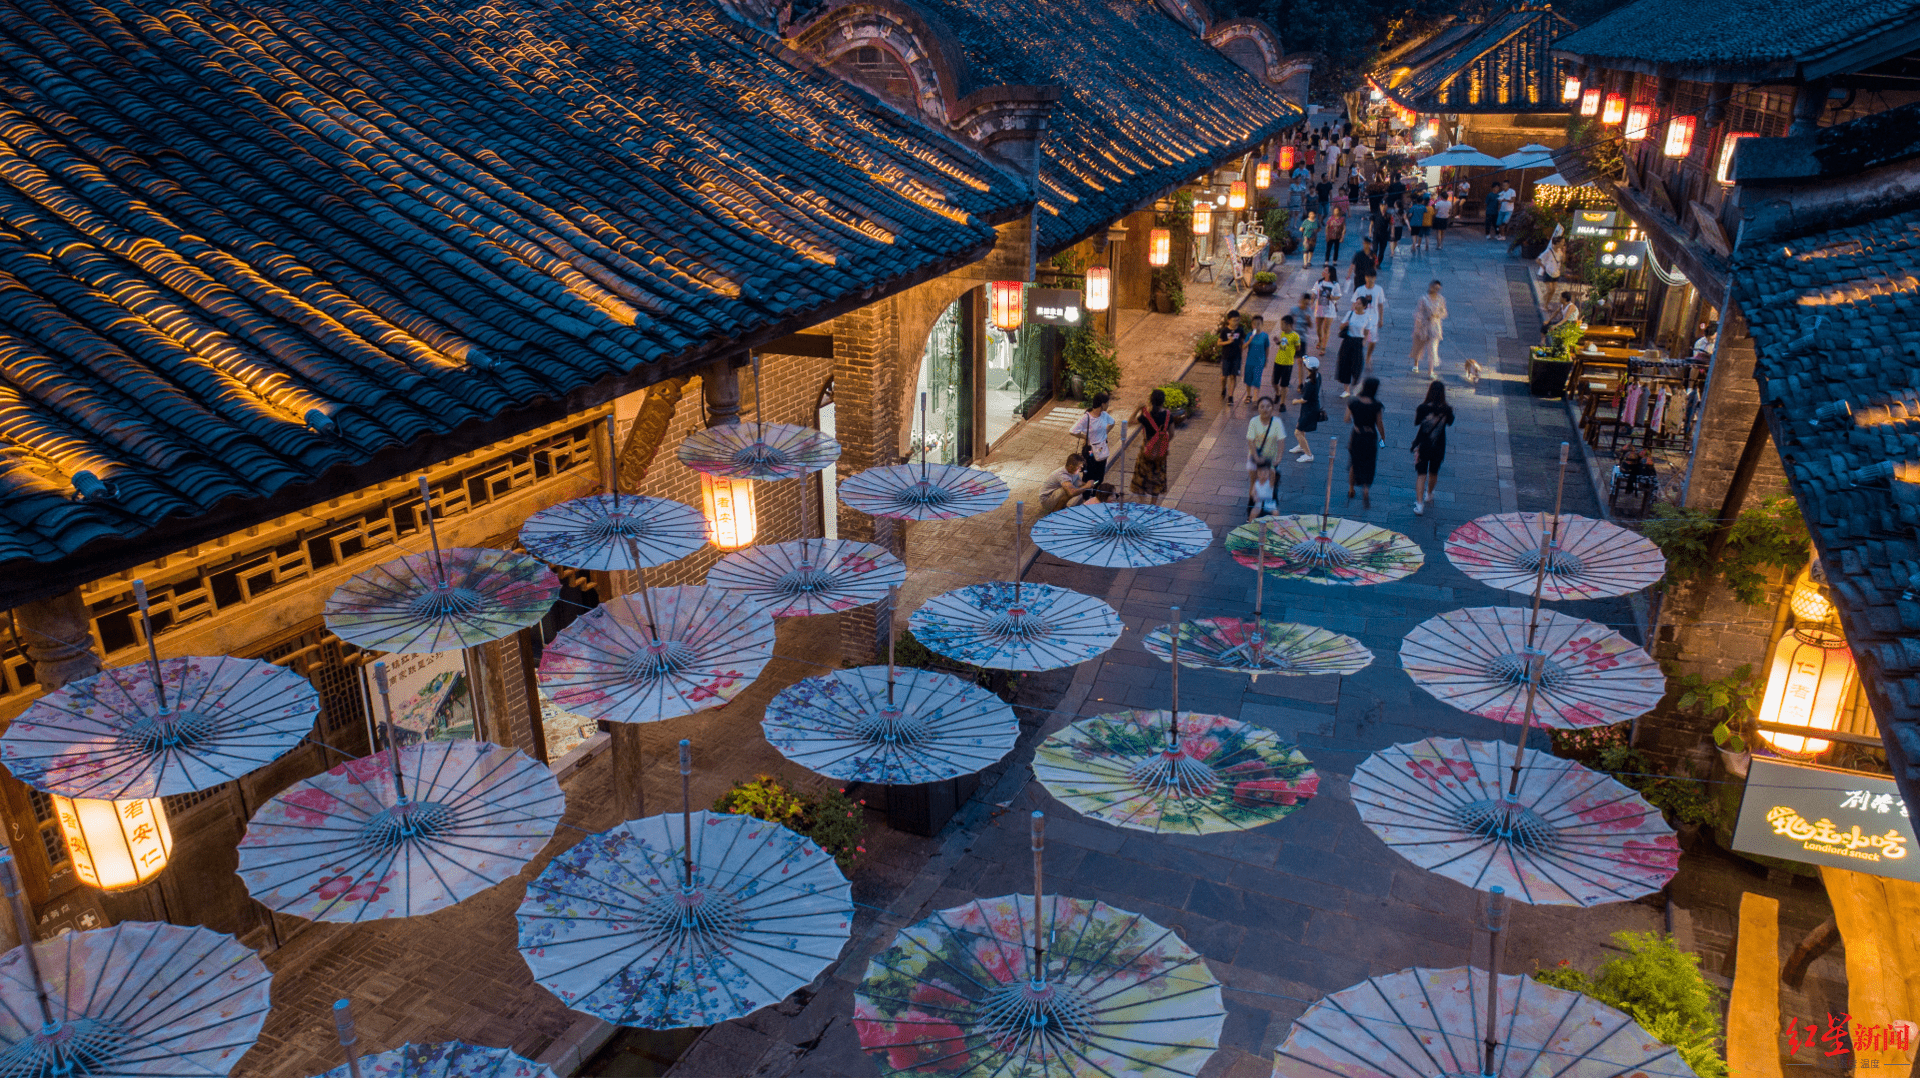 图片展示了一个繁忙的夜市，古老建筑两旁，地面上放置着多把展开的彩色油纸伞，灯光映照下别具风情。